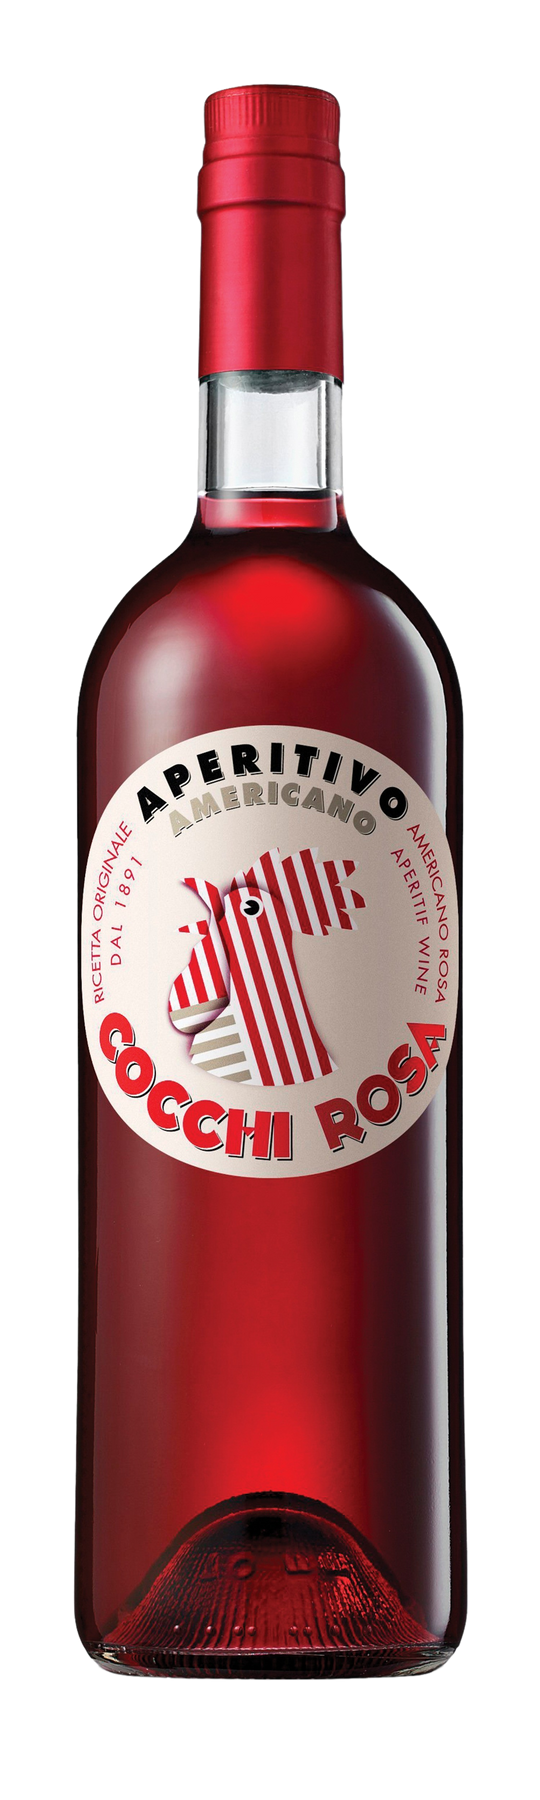 Cocchi Americano Rosa 16% 75cl Vermouth di Torino